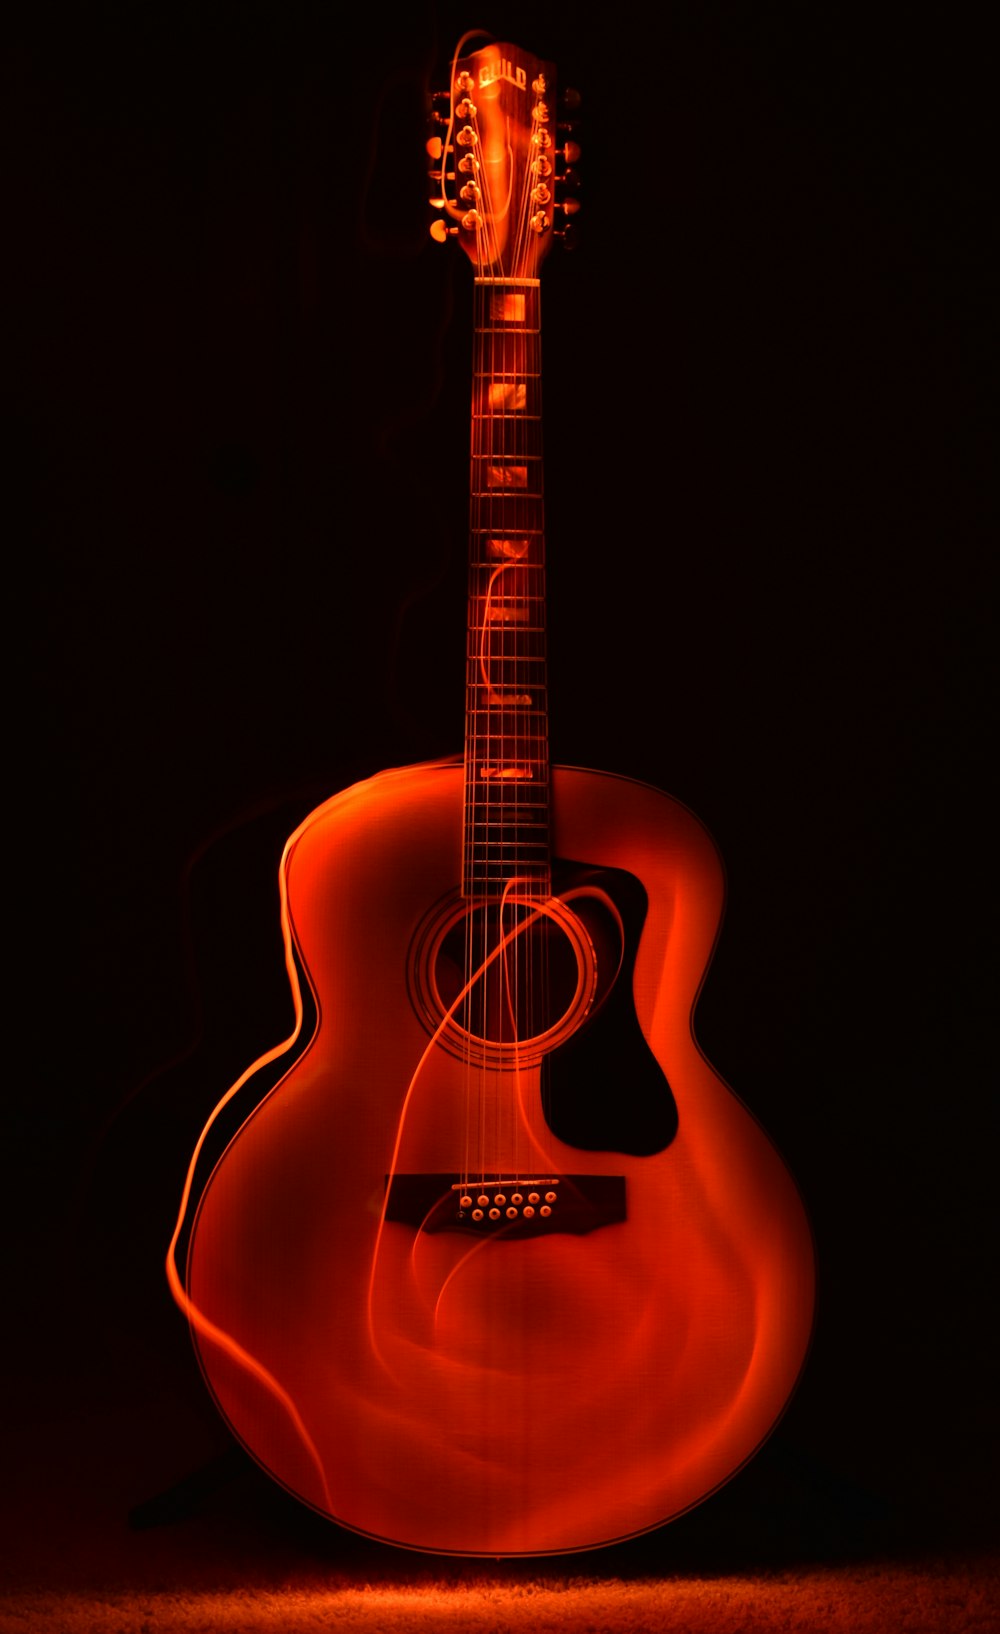 Foto fondo de pantalla de guitarra naranja – Imagen Guitarra gratis en  Unsplash